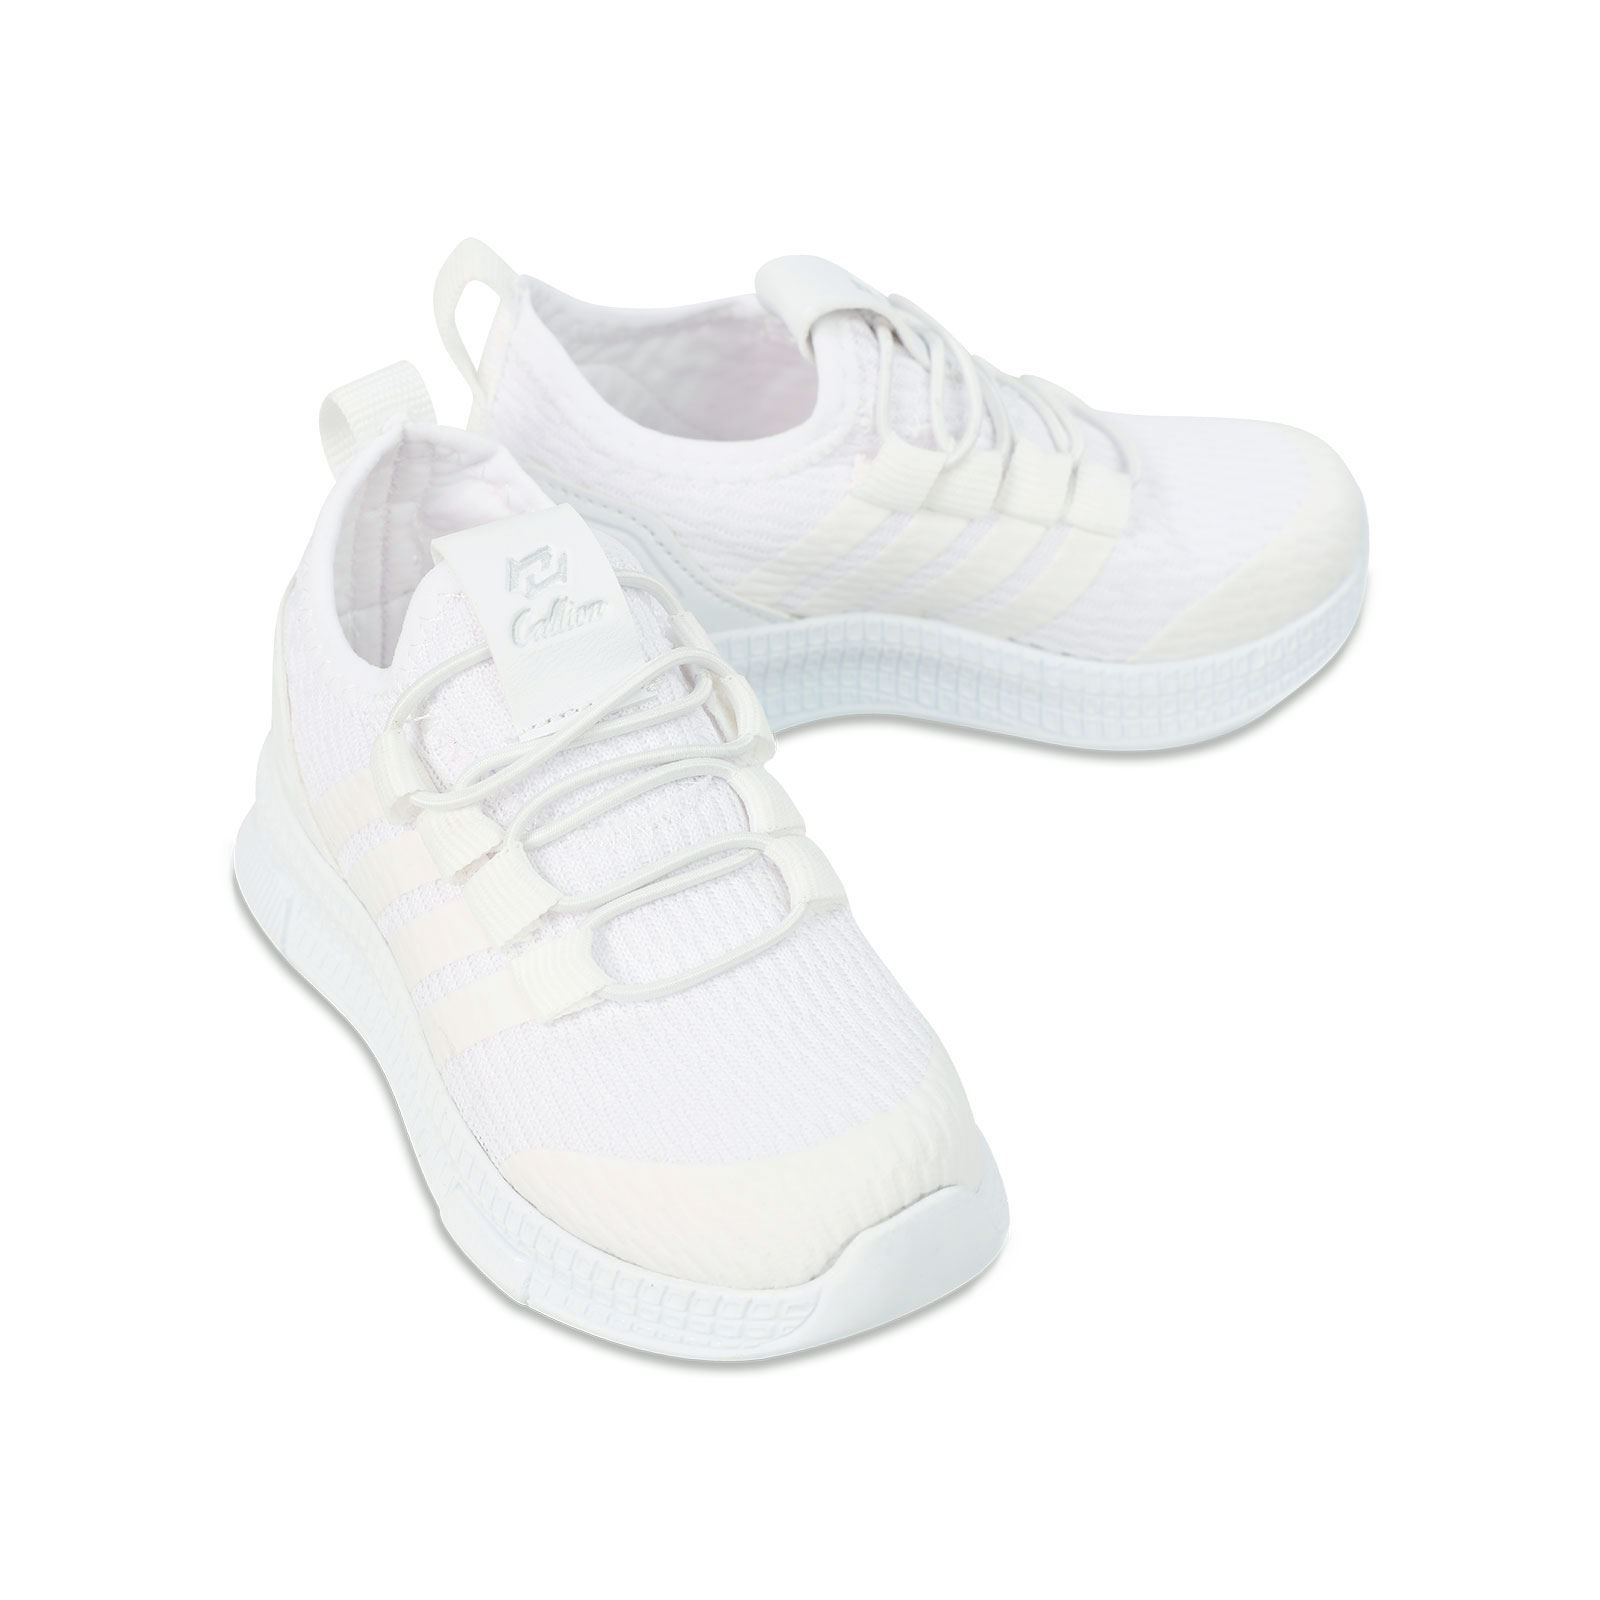 Callion Kız Çocuk Spor Ayakkabı 26-30 Numara Beyaz